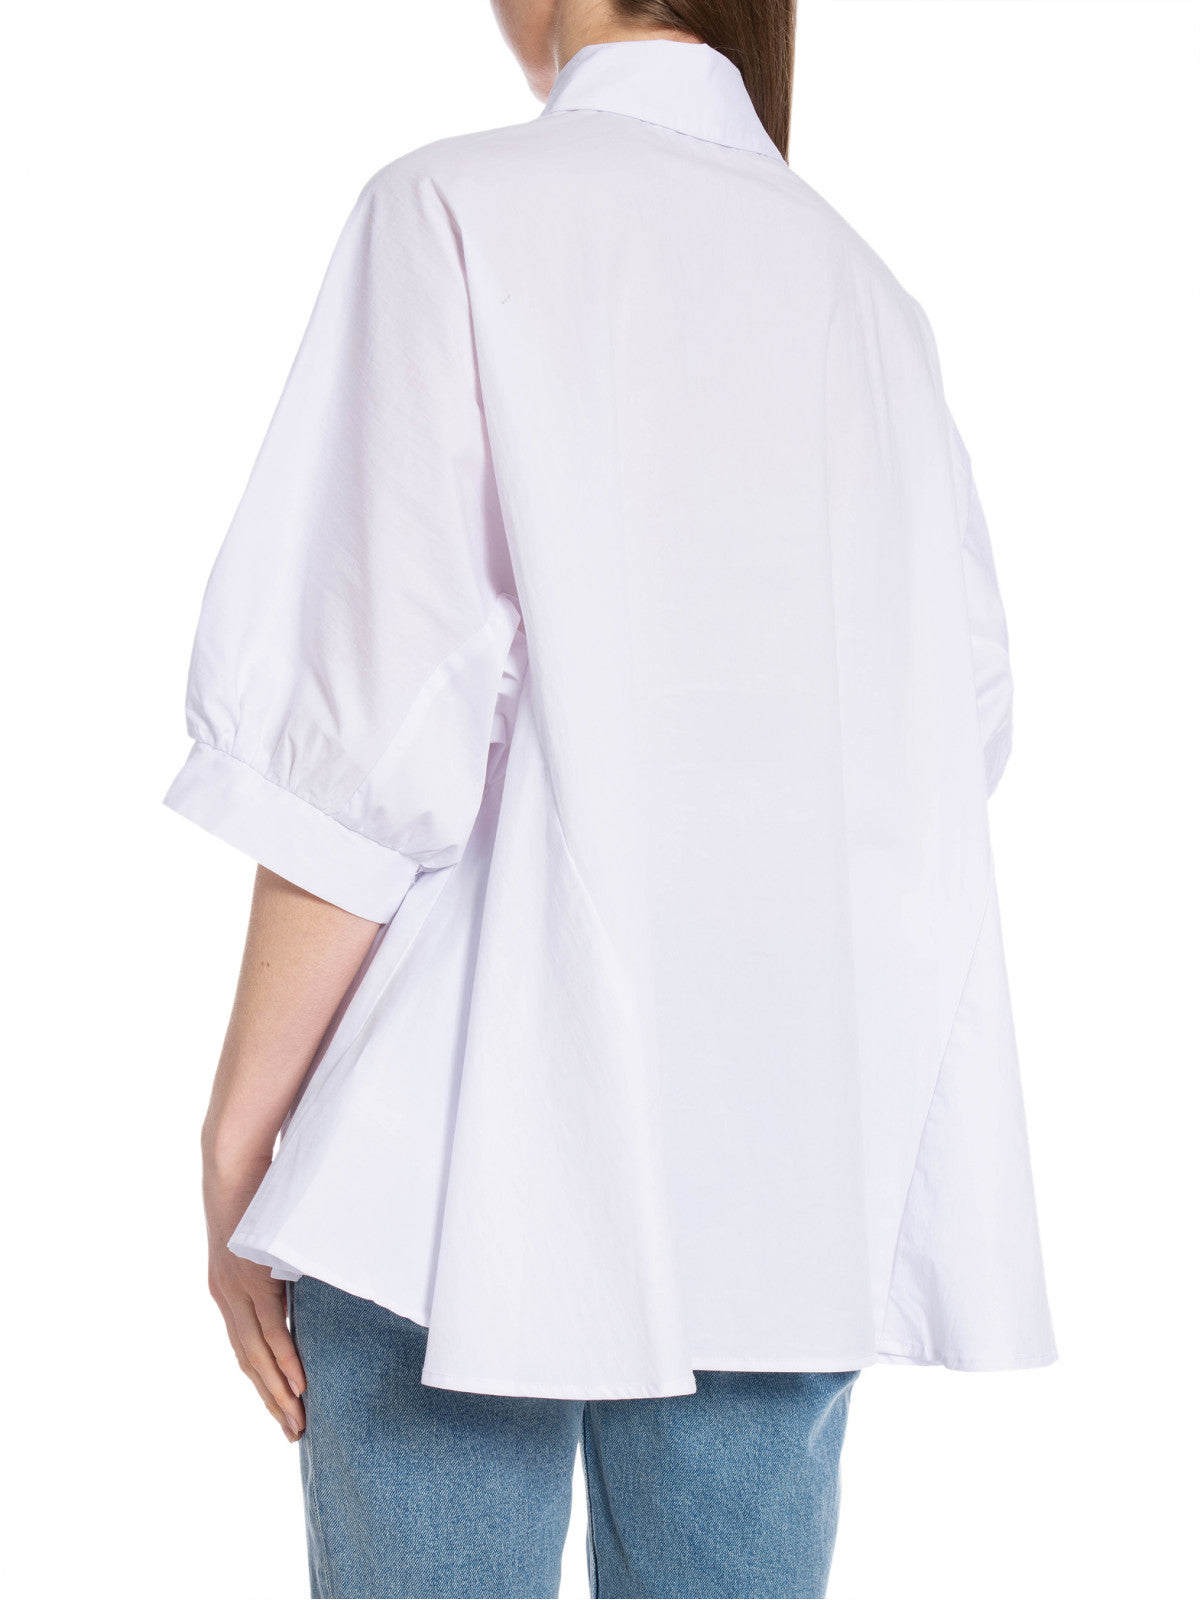 Co’couture cotton crisp wing blouse